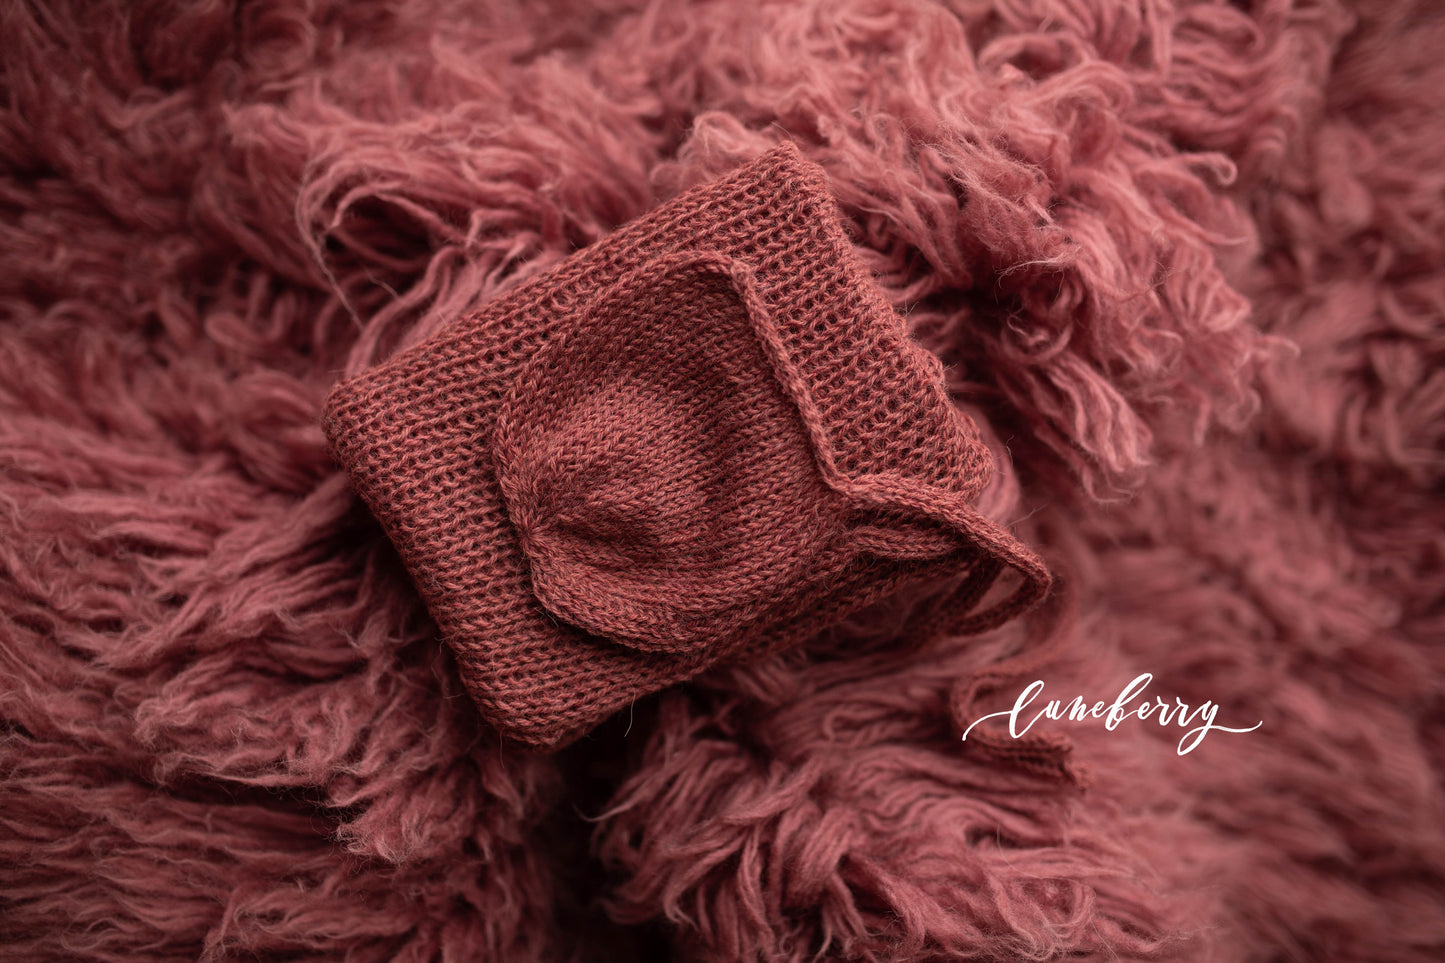 MOSS ROSE matching knits